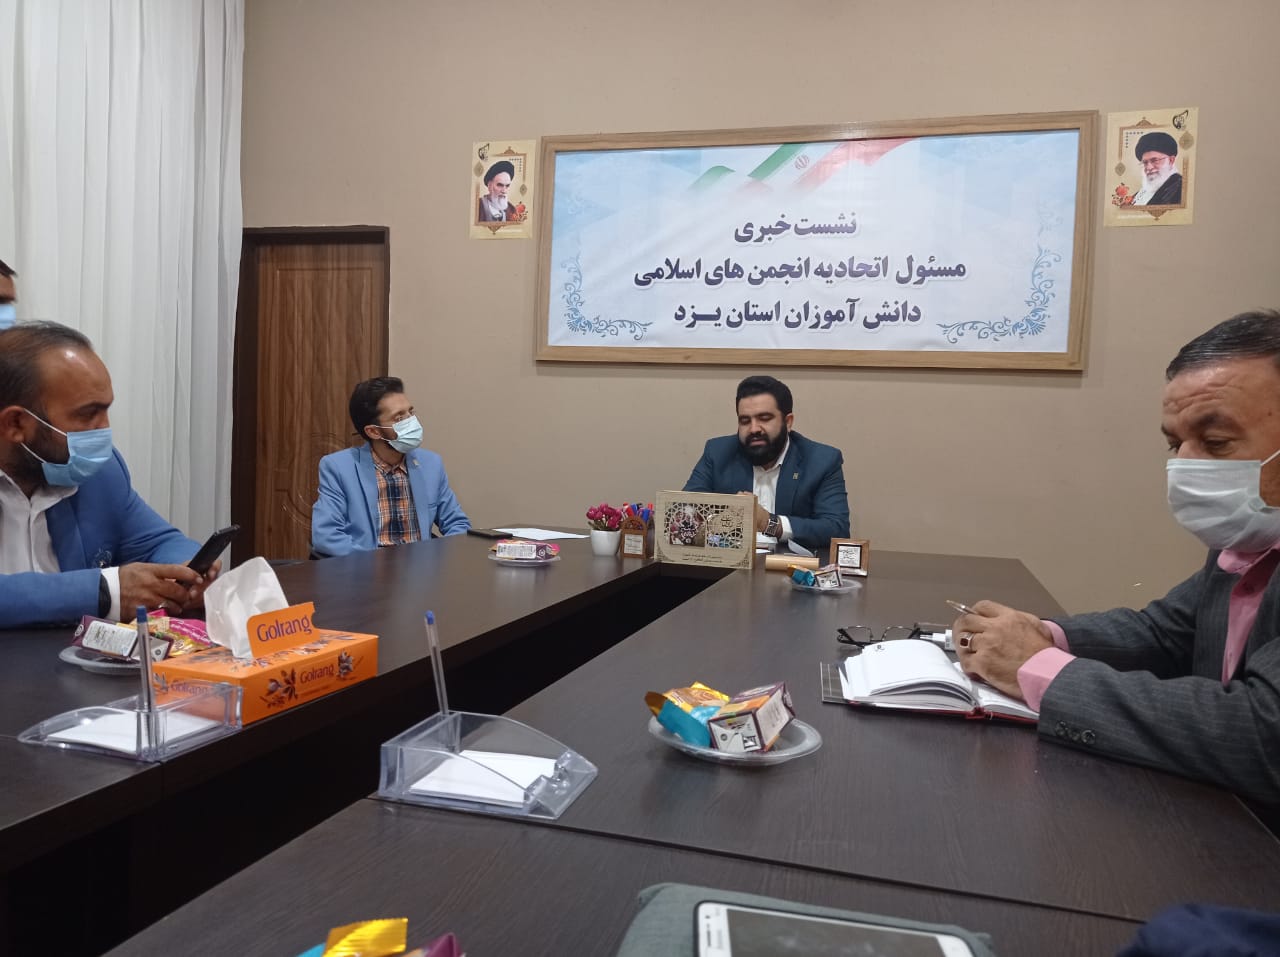 تربیت مدیر و کادرسازی مهمترین هدف تشکل دانش آموزی اتحادیه انجمن اسلامی است  